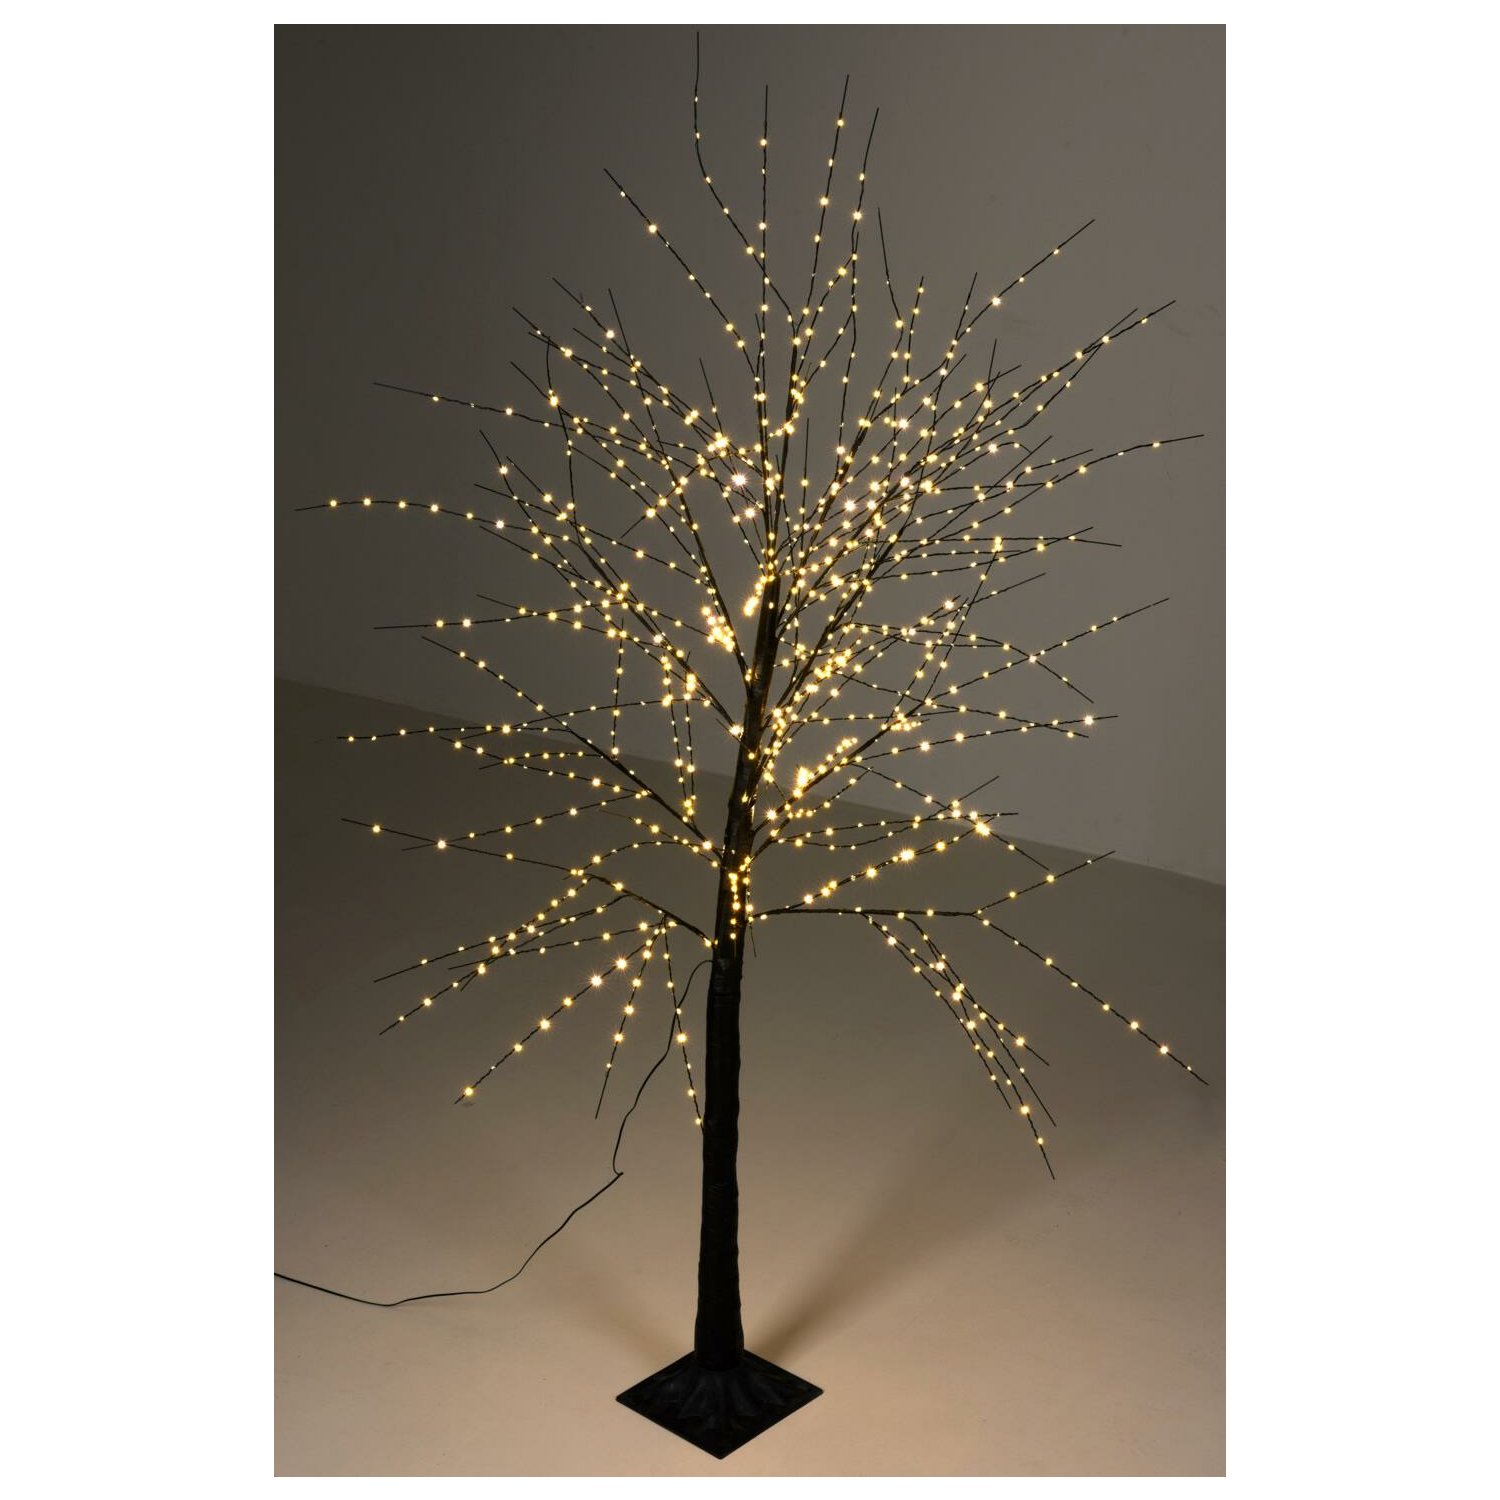 Lichterbaum 840 LED warmweiß 180 cm - Silhouette beleuchteter Bau